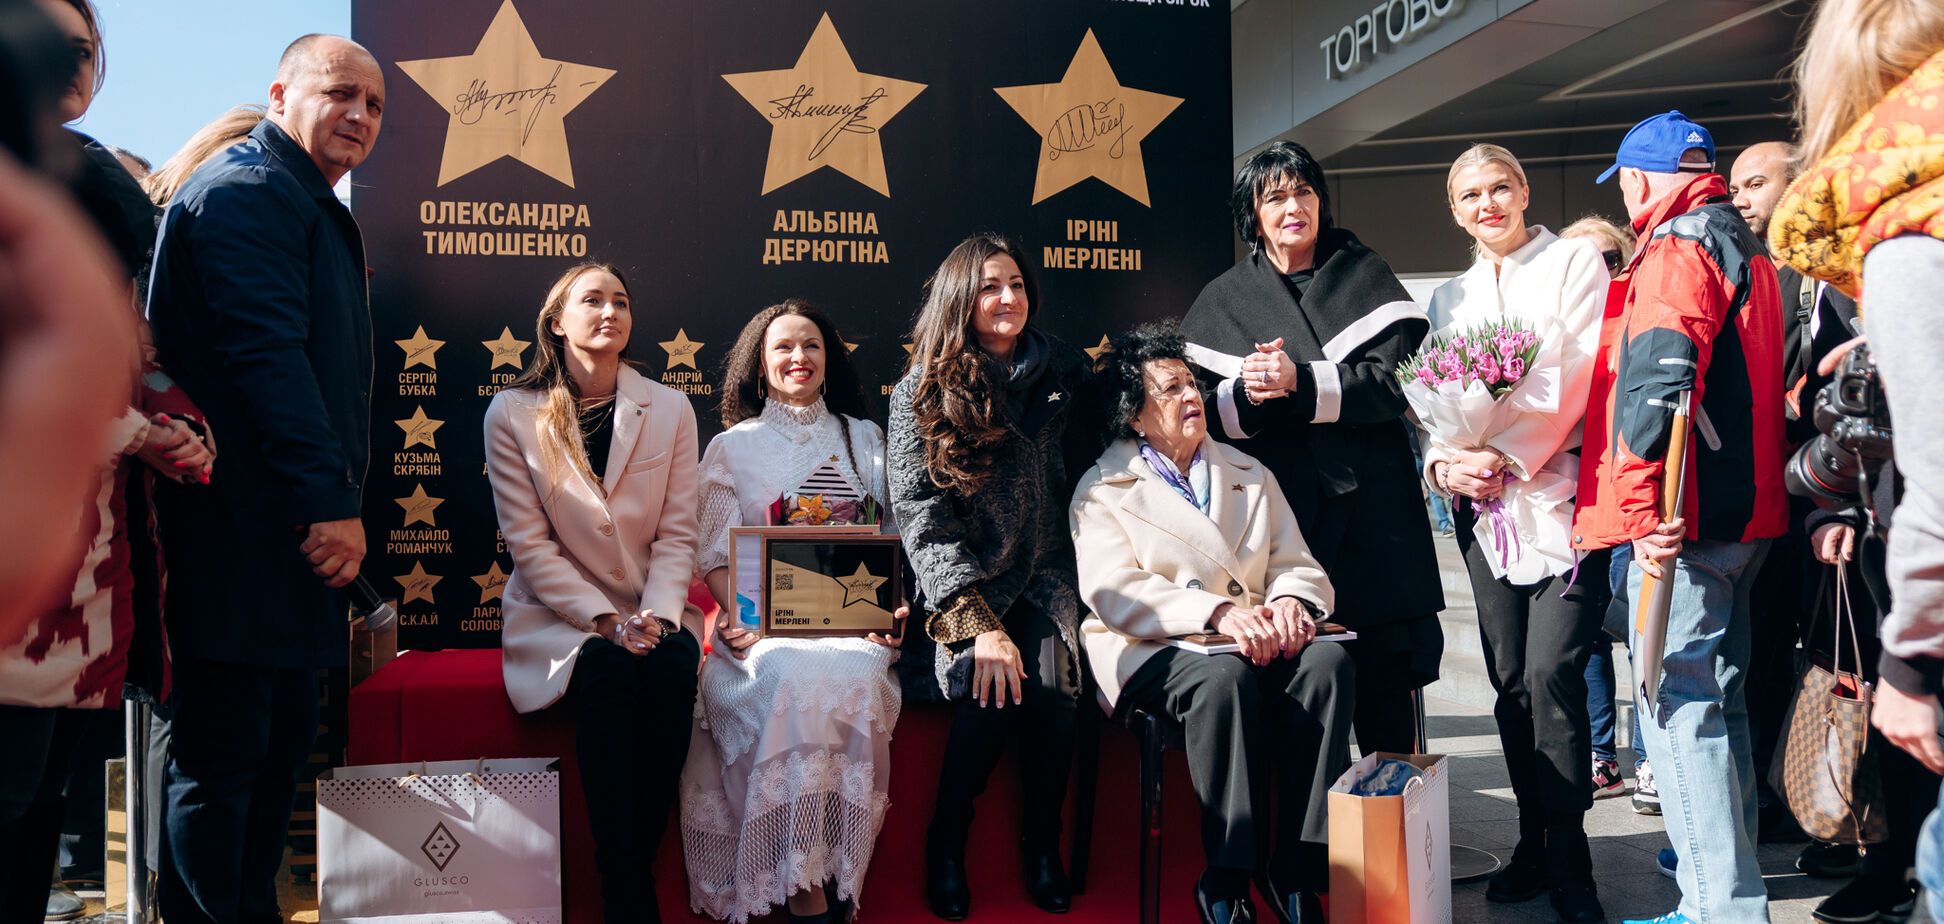 У Києві на 'Площі зірок' з'явилися імена Дерюгіної, Мерлені та Тимошенко